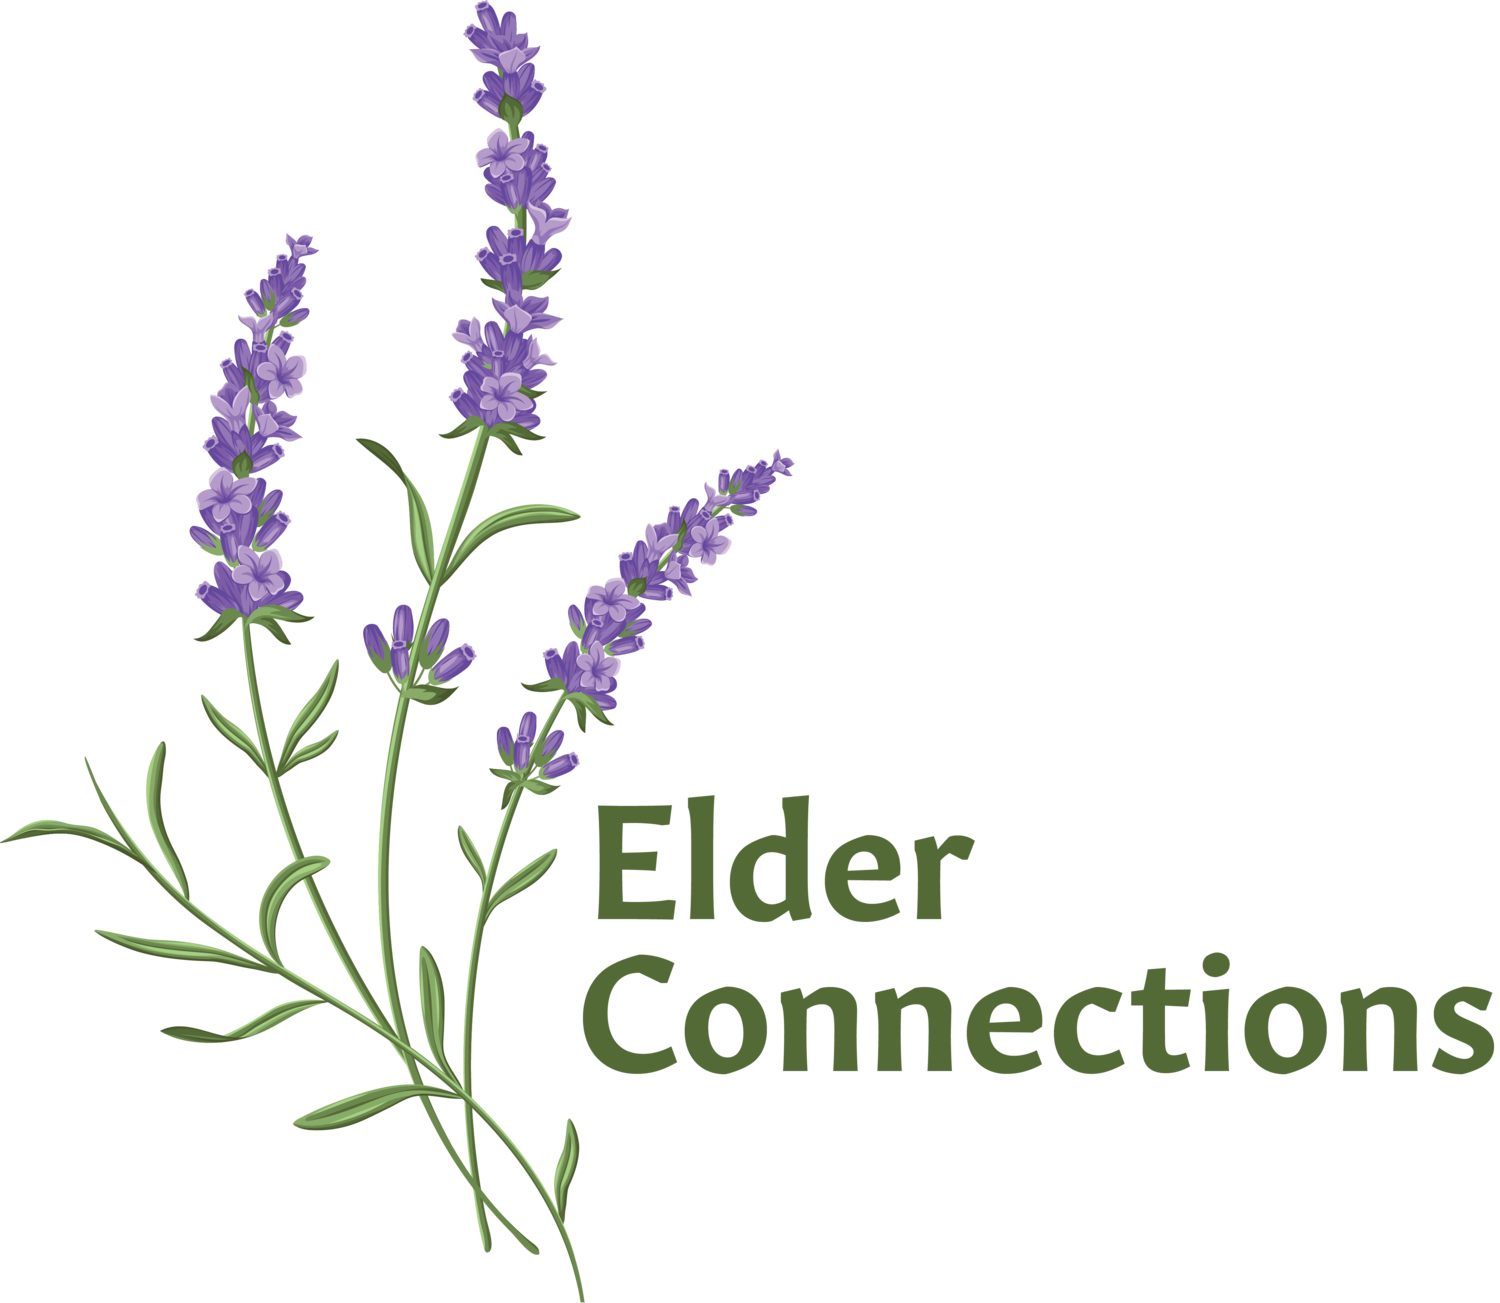 Elder Connections